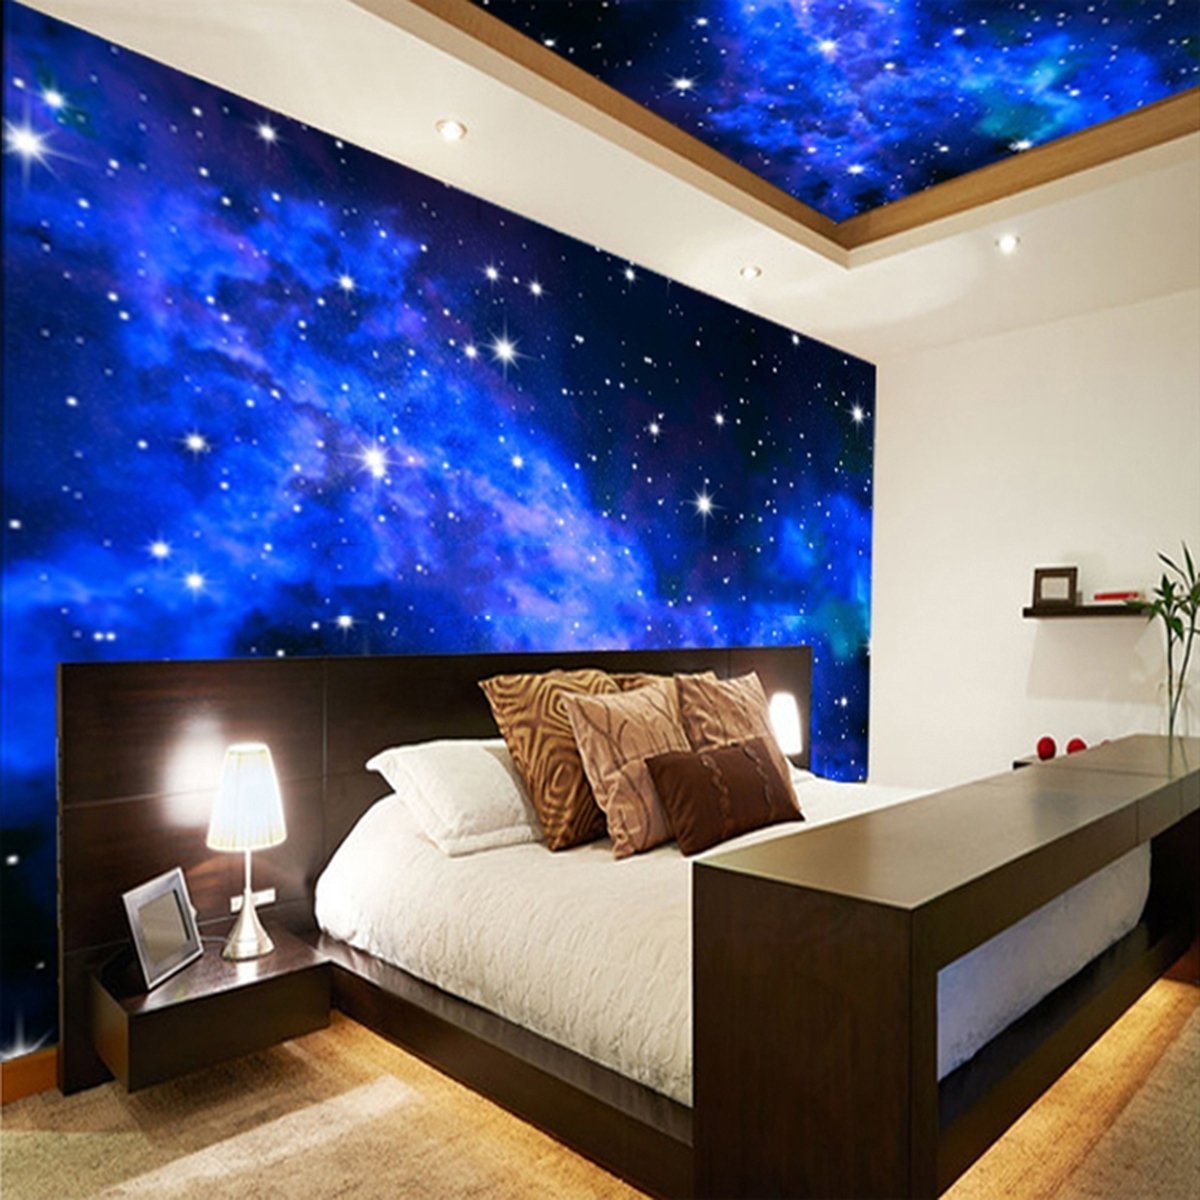 Домашнее звездное небо. Потолок звездное небо. Спальня в космическом стиле. Натяжной потолок звездное небо. Звездный потолок в спальне.